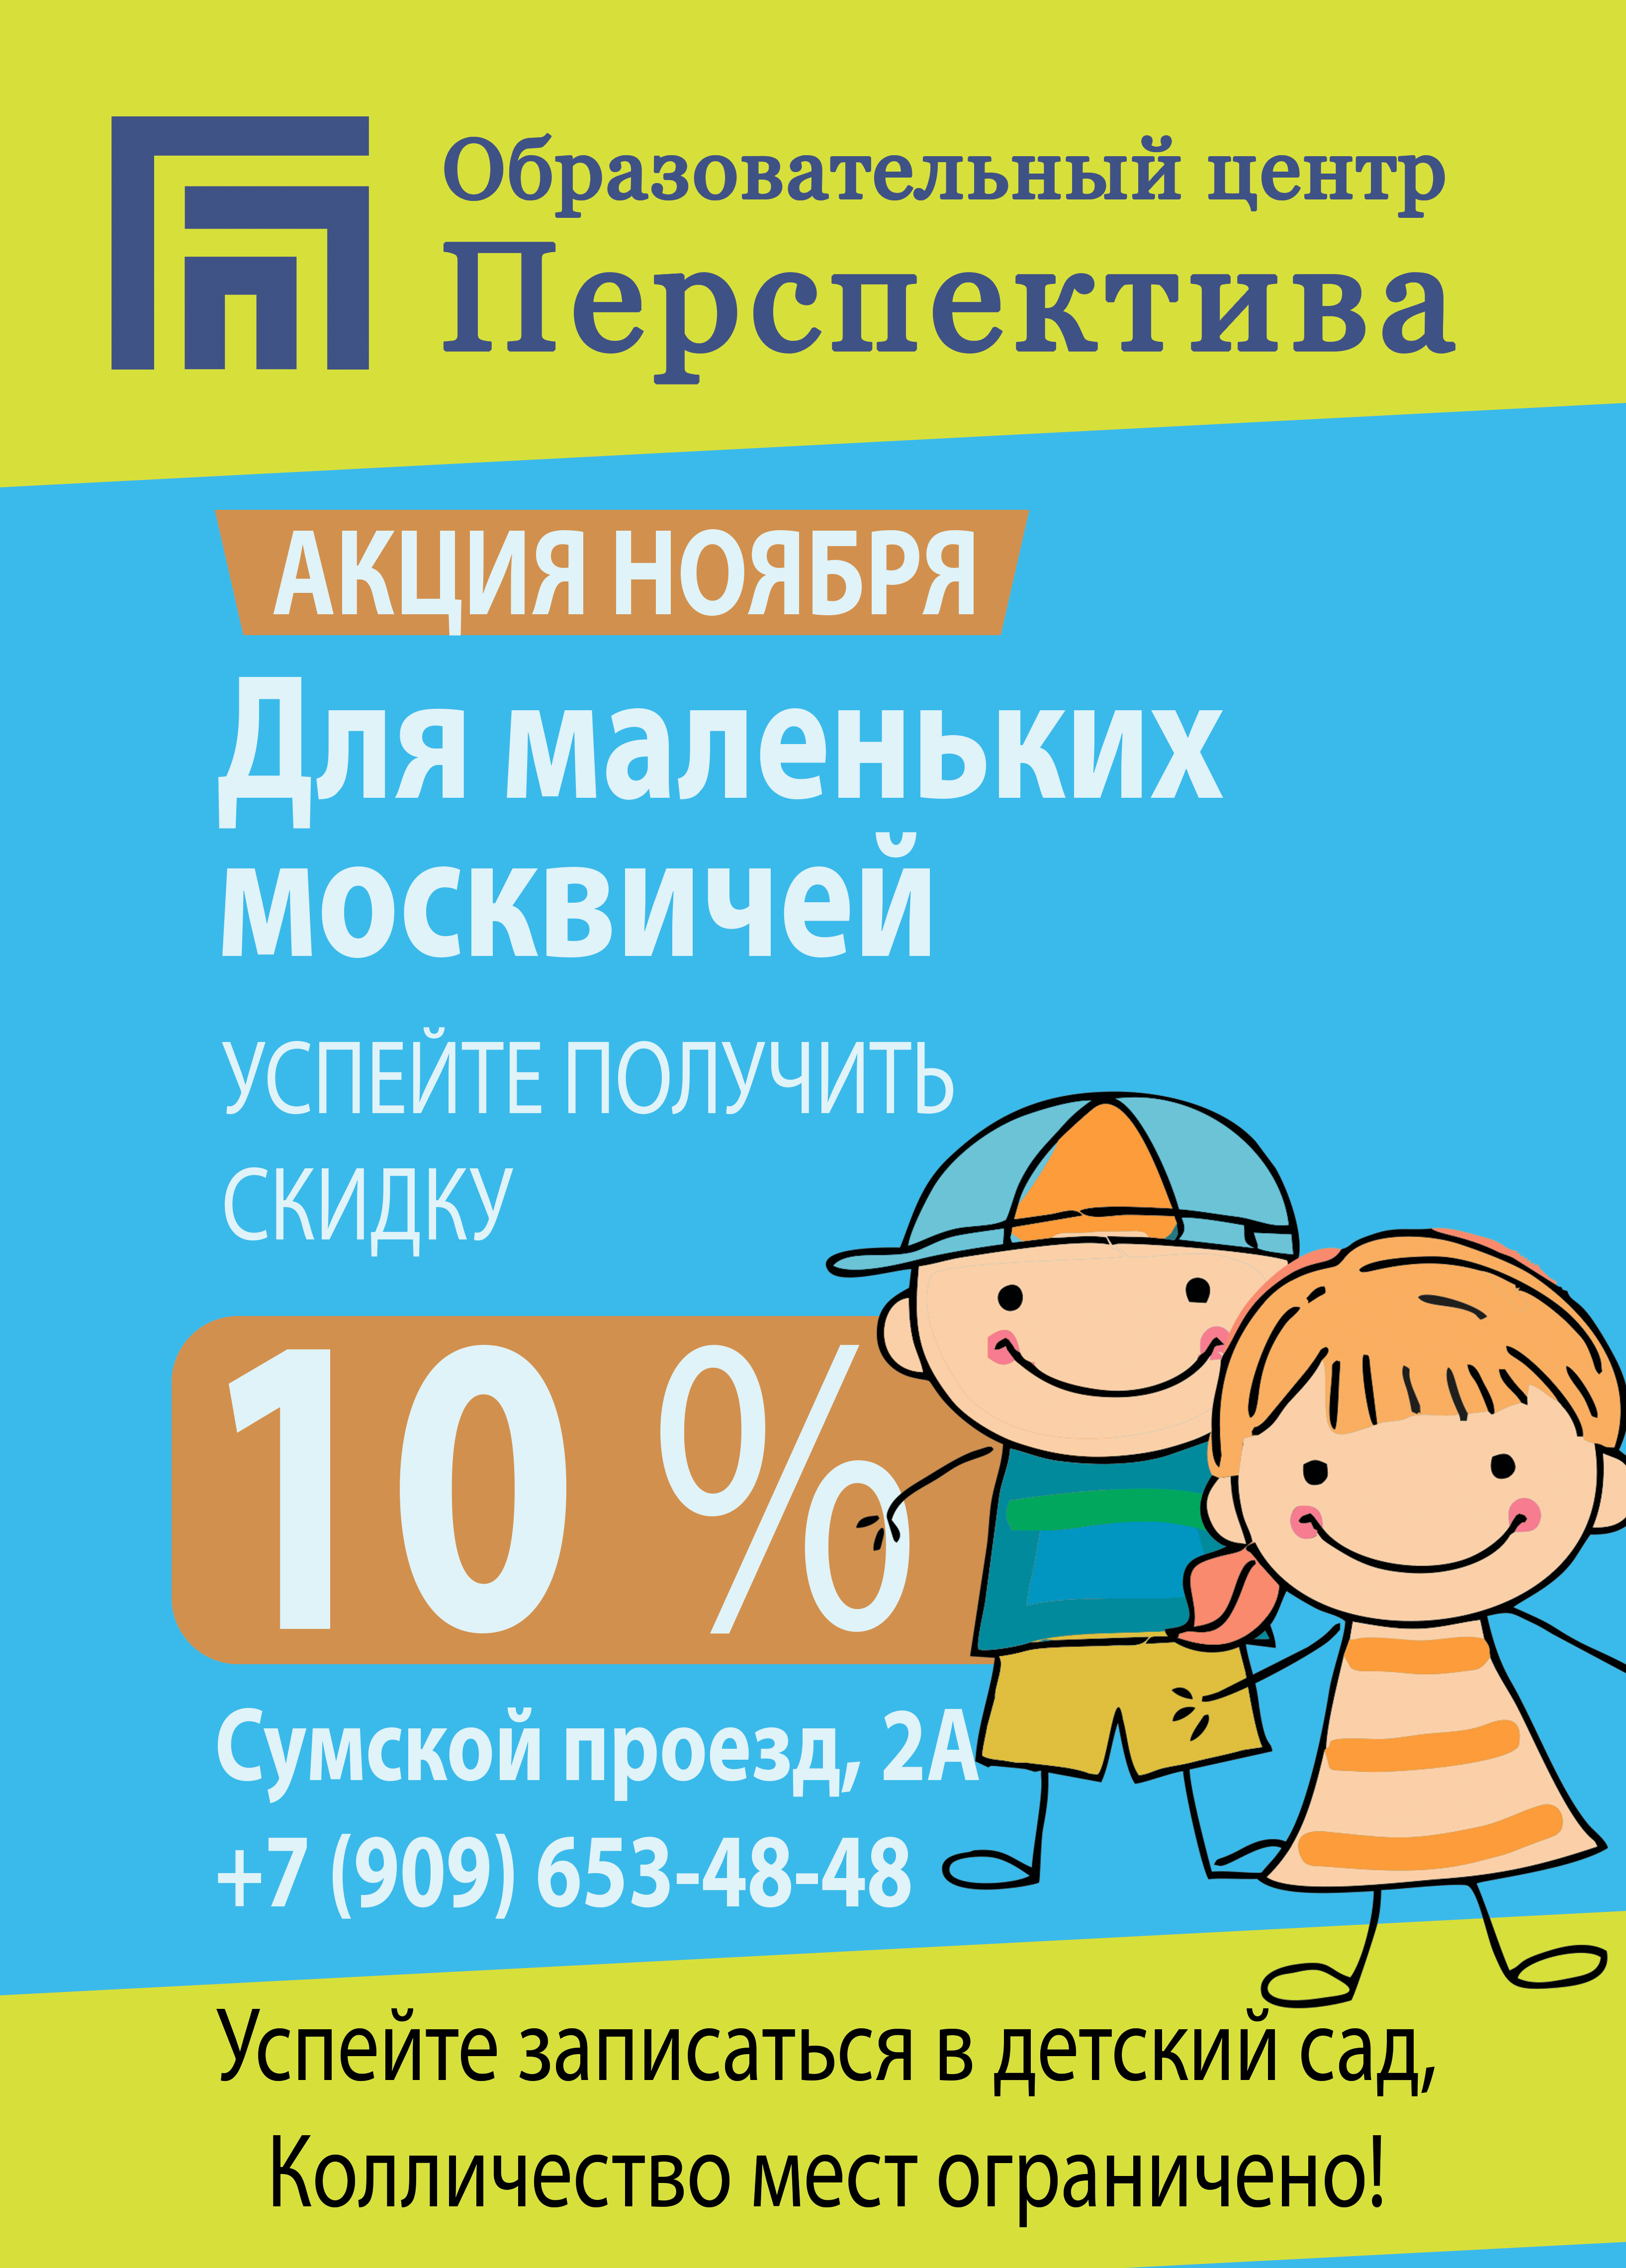 Частный детский сад «Перспектива» - Акция ноября! Для маленьких москвичей!